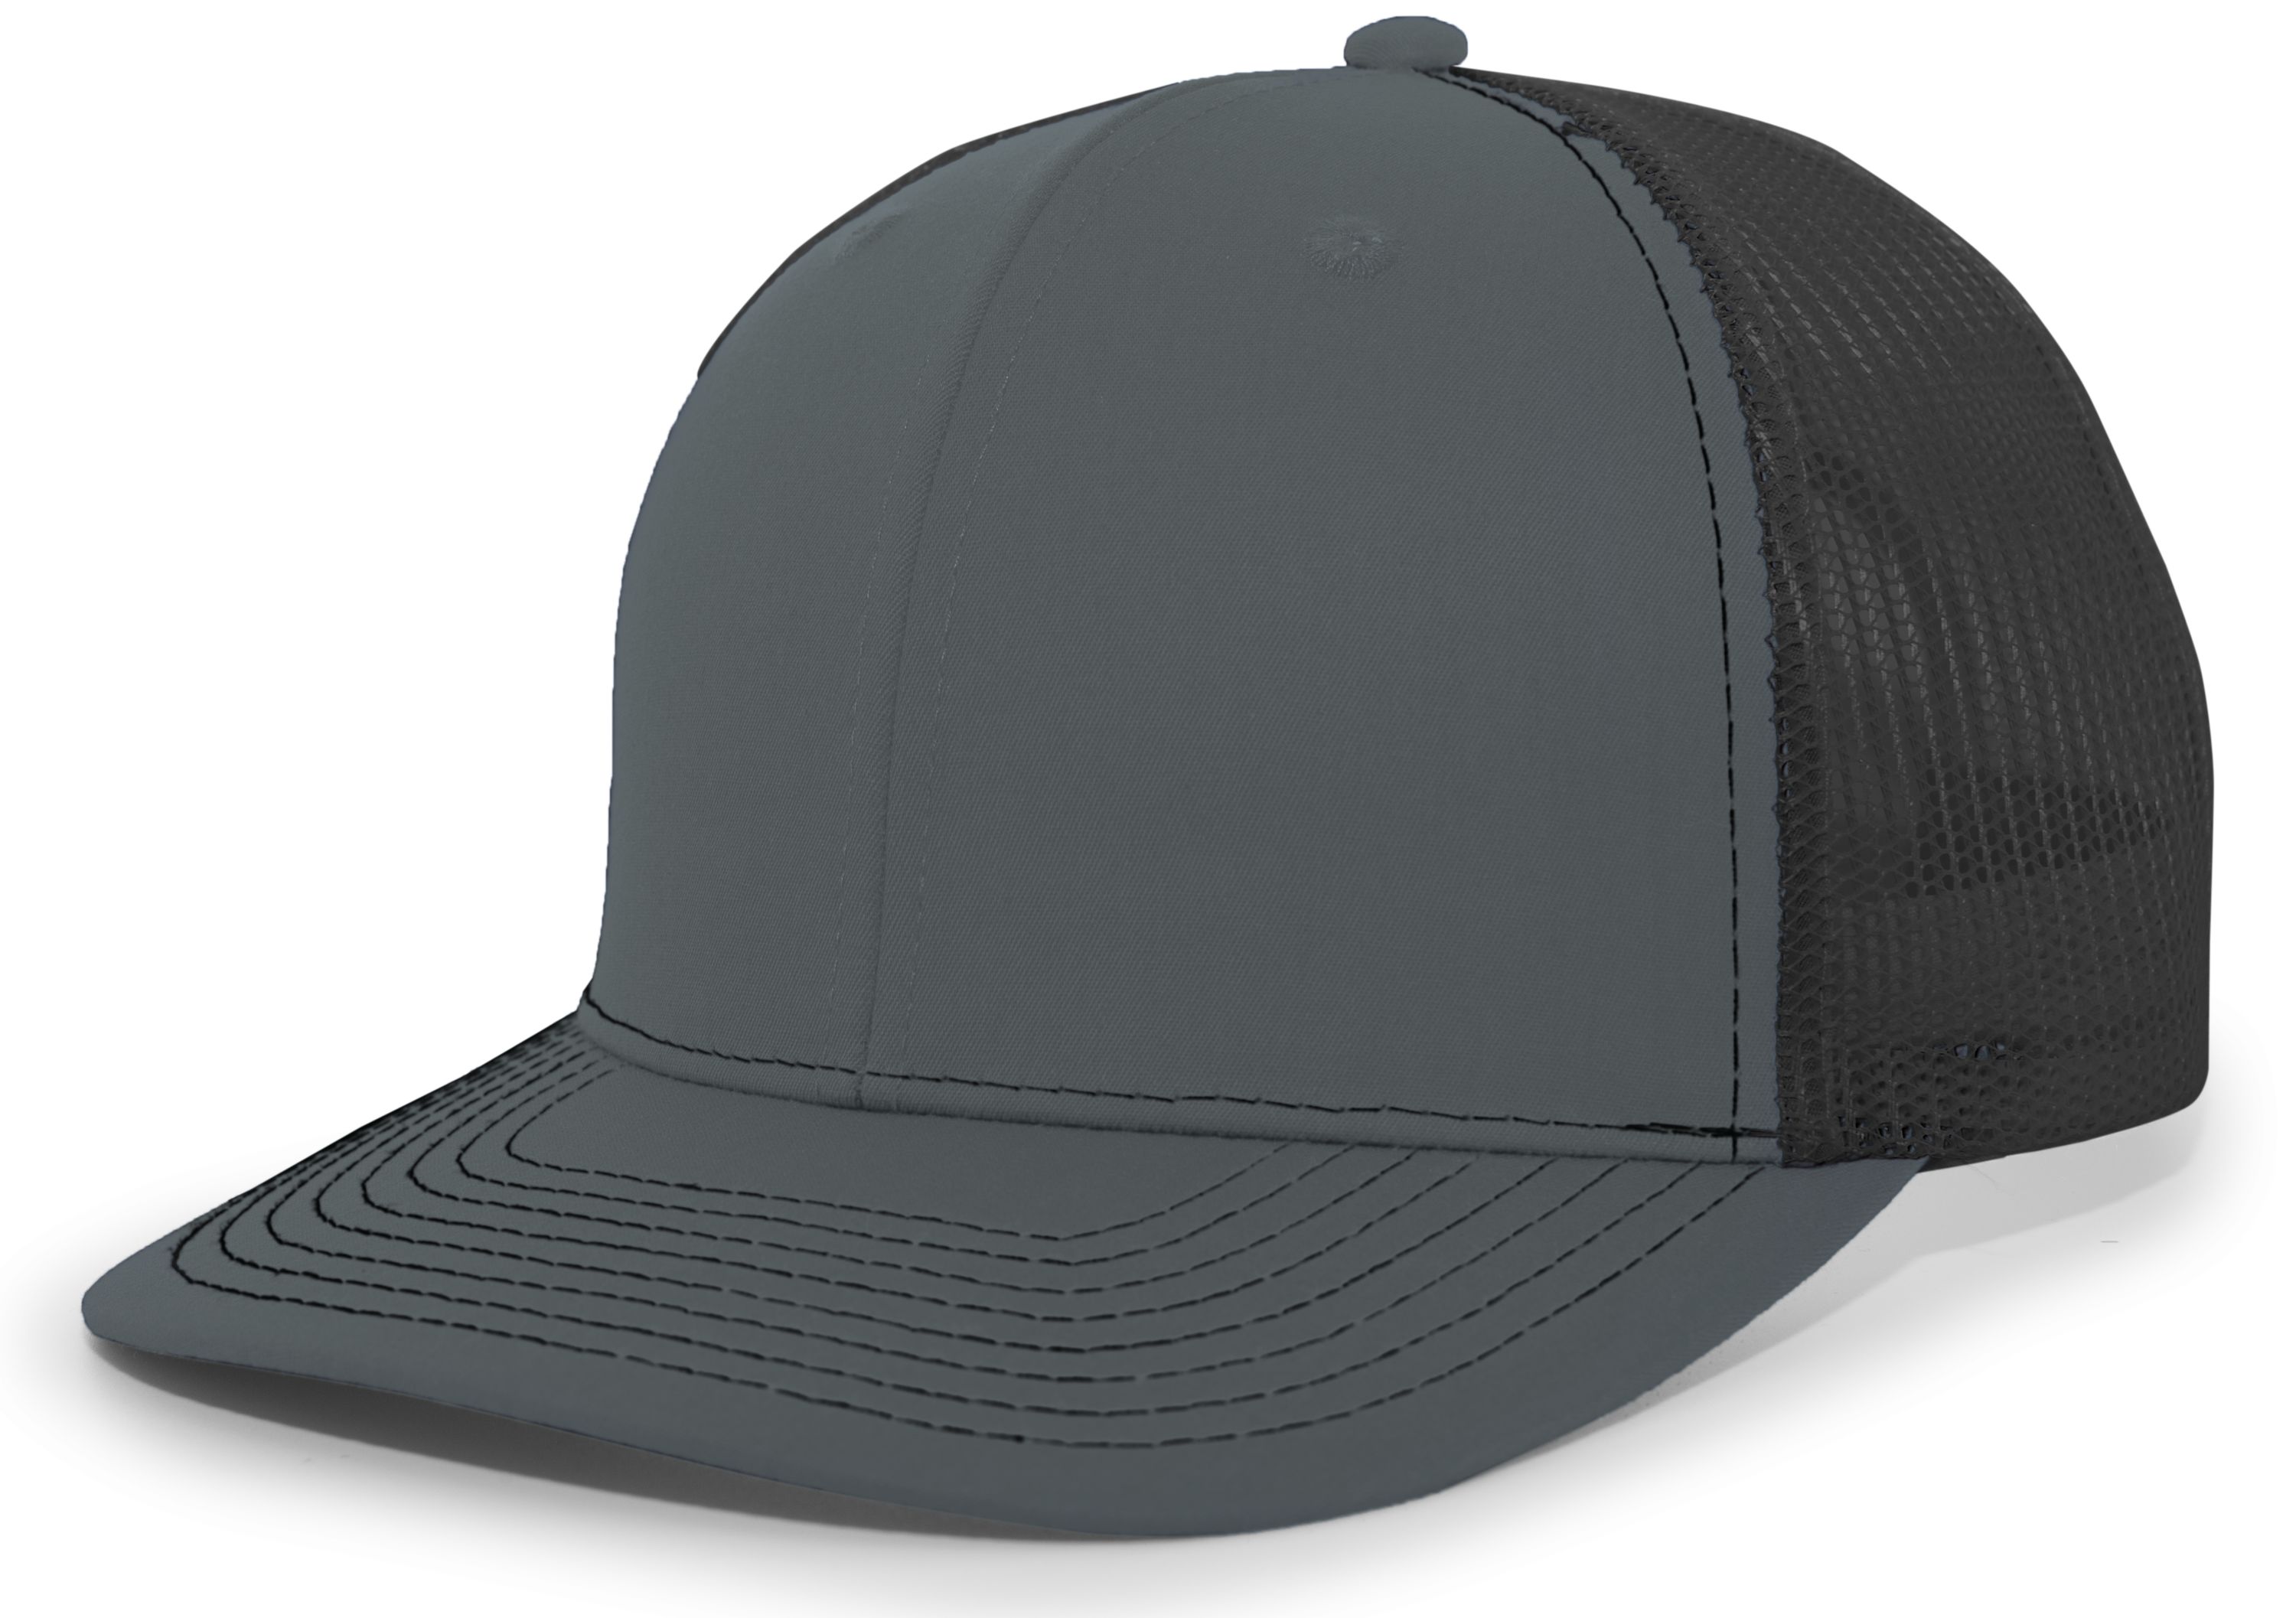 Pacific Headwear PE10 - Trucker Snapback Cap